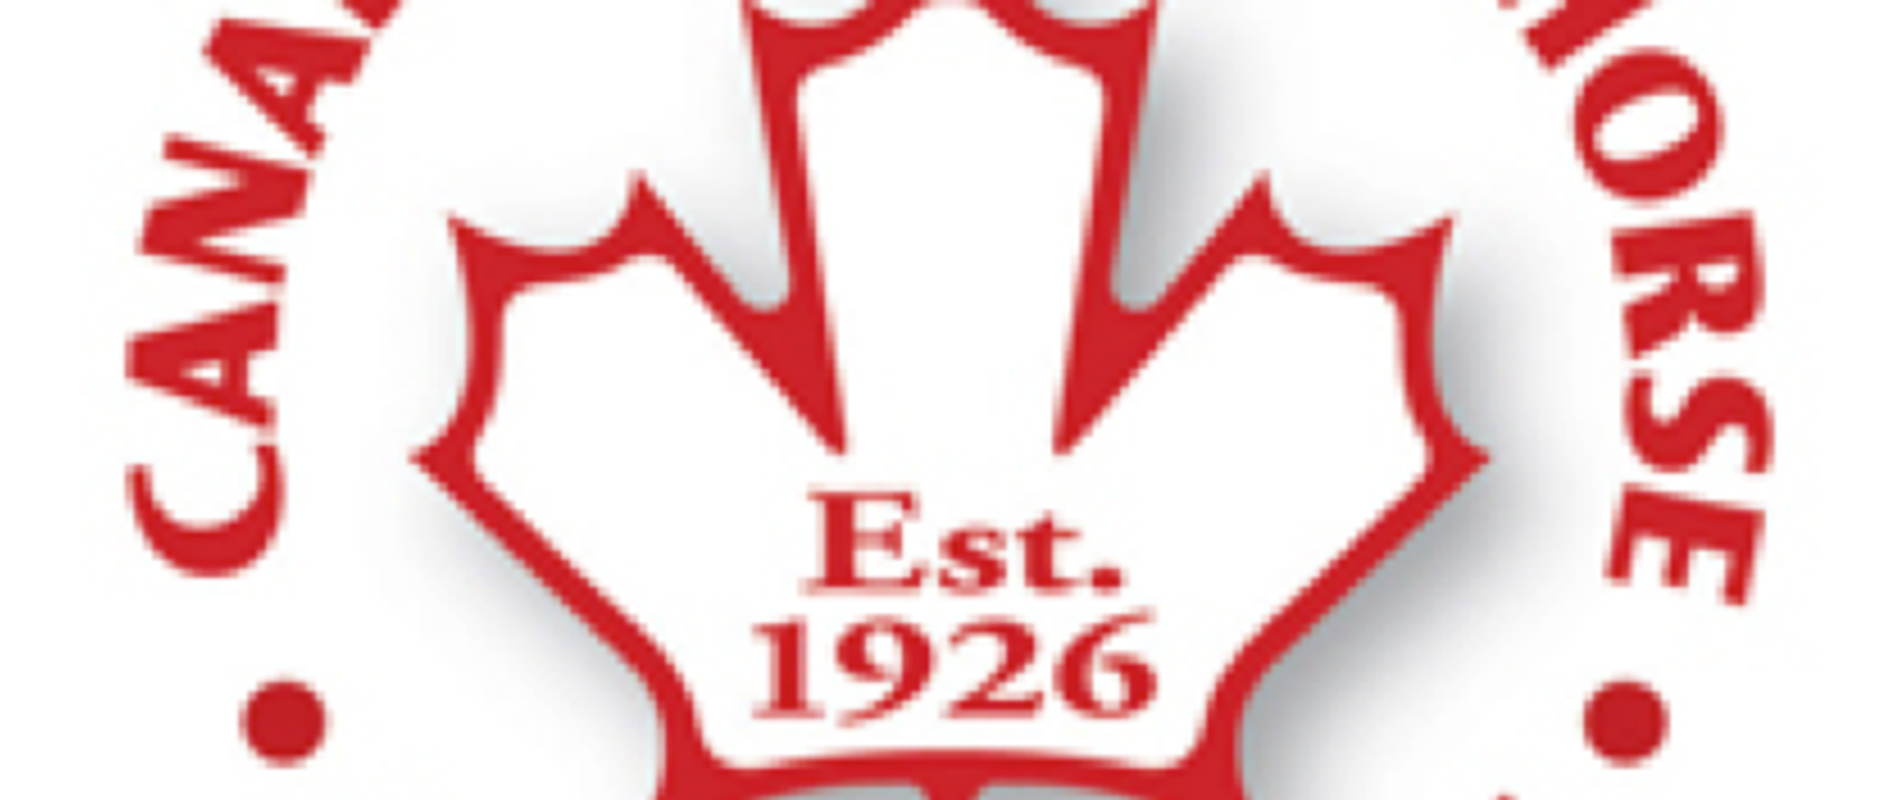 Red and white CSHA logo